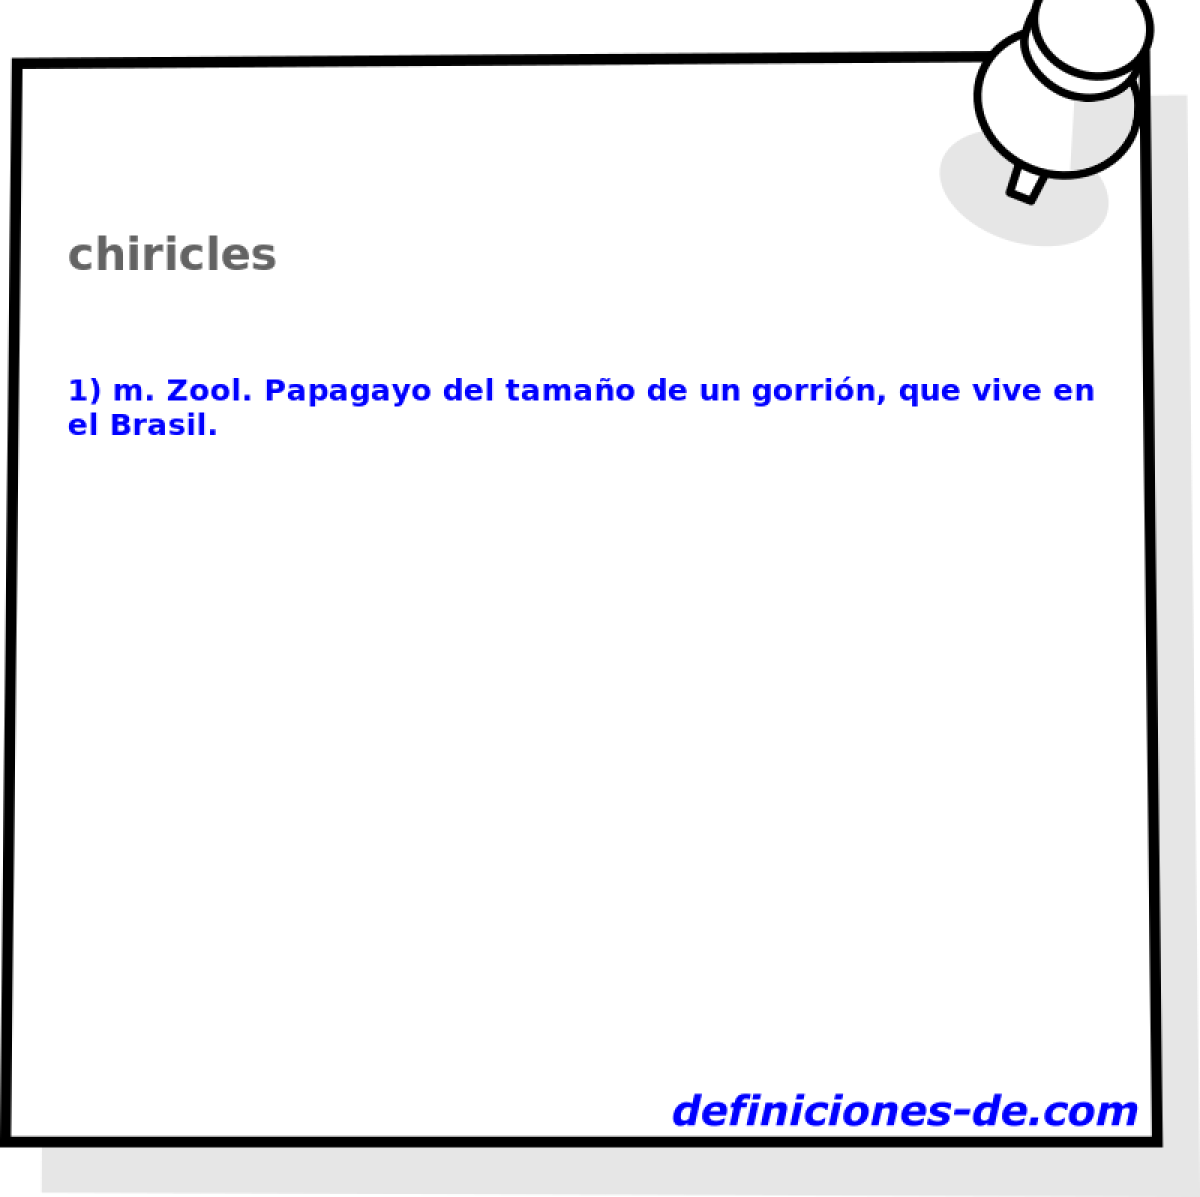 chiricles 